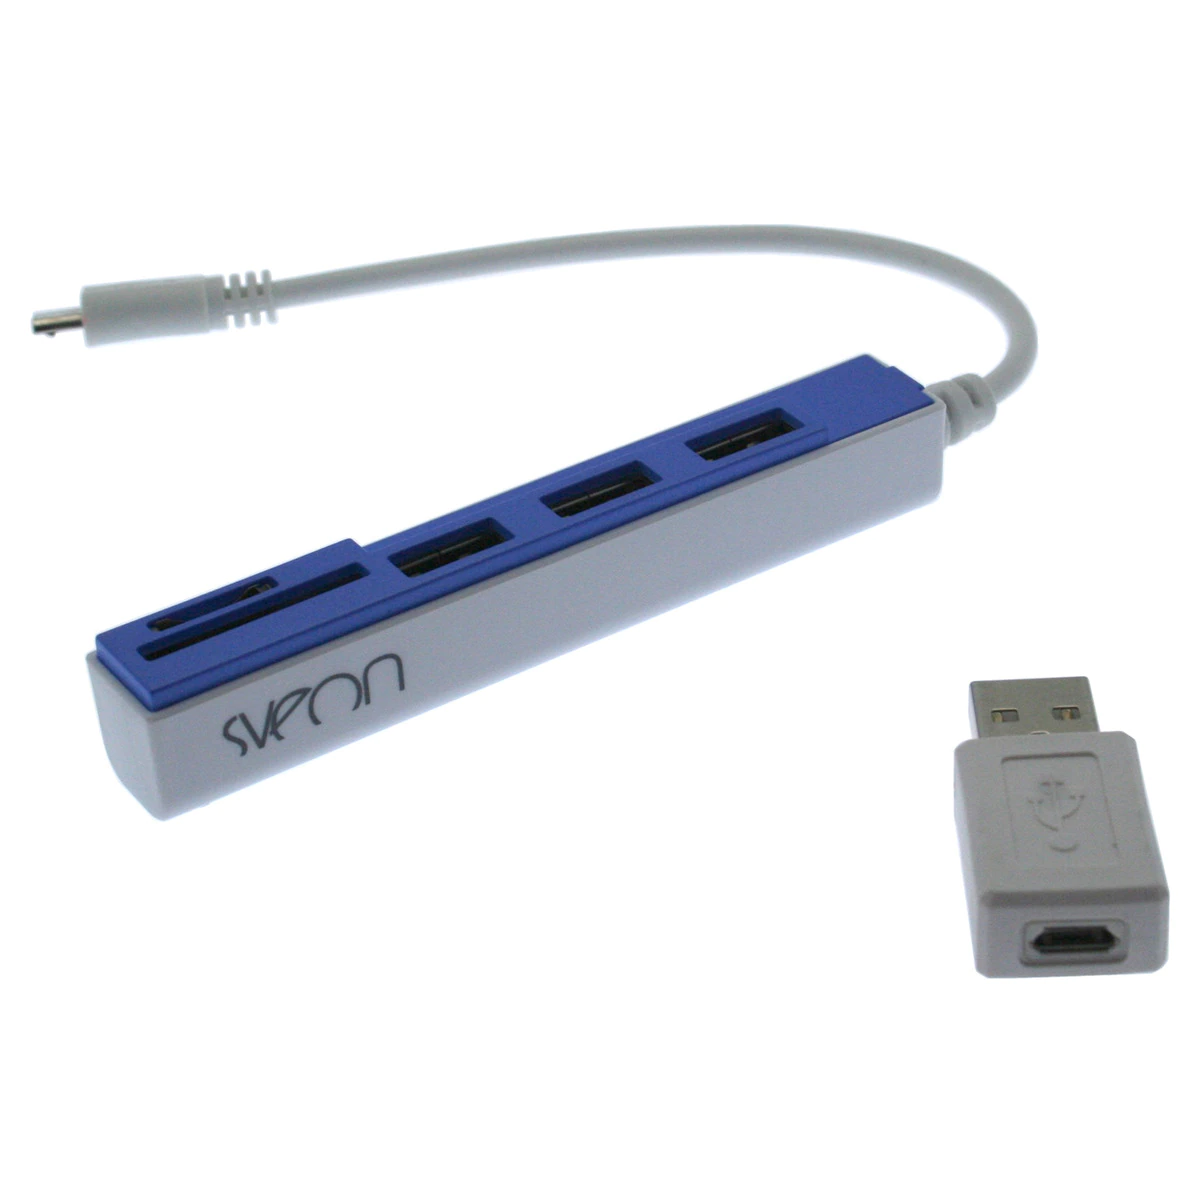 Hub Sveon SCT031 3 puertos USB 2.0 y lector de tarjetas con conexión a Micro USB